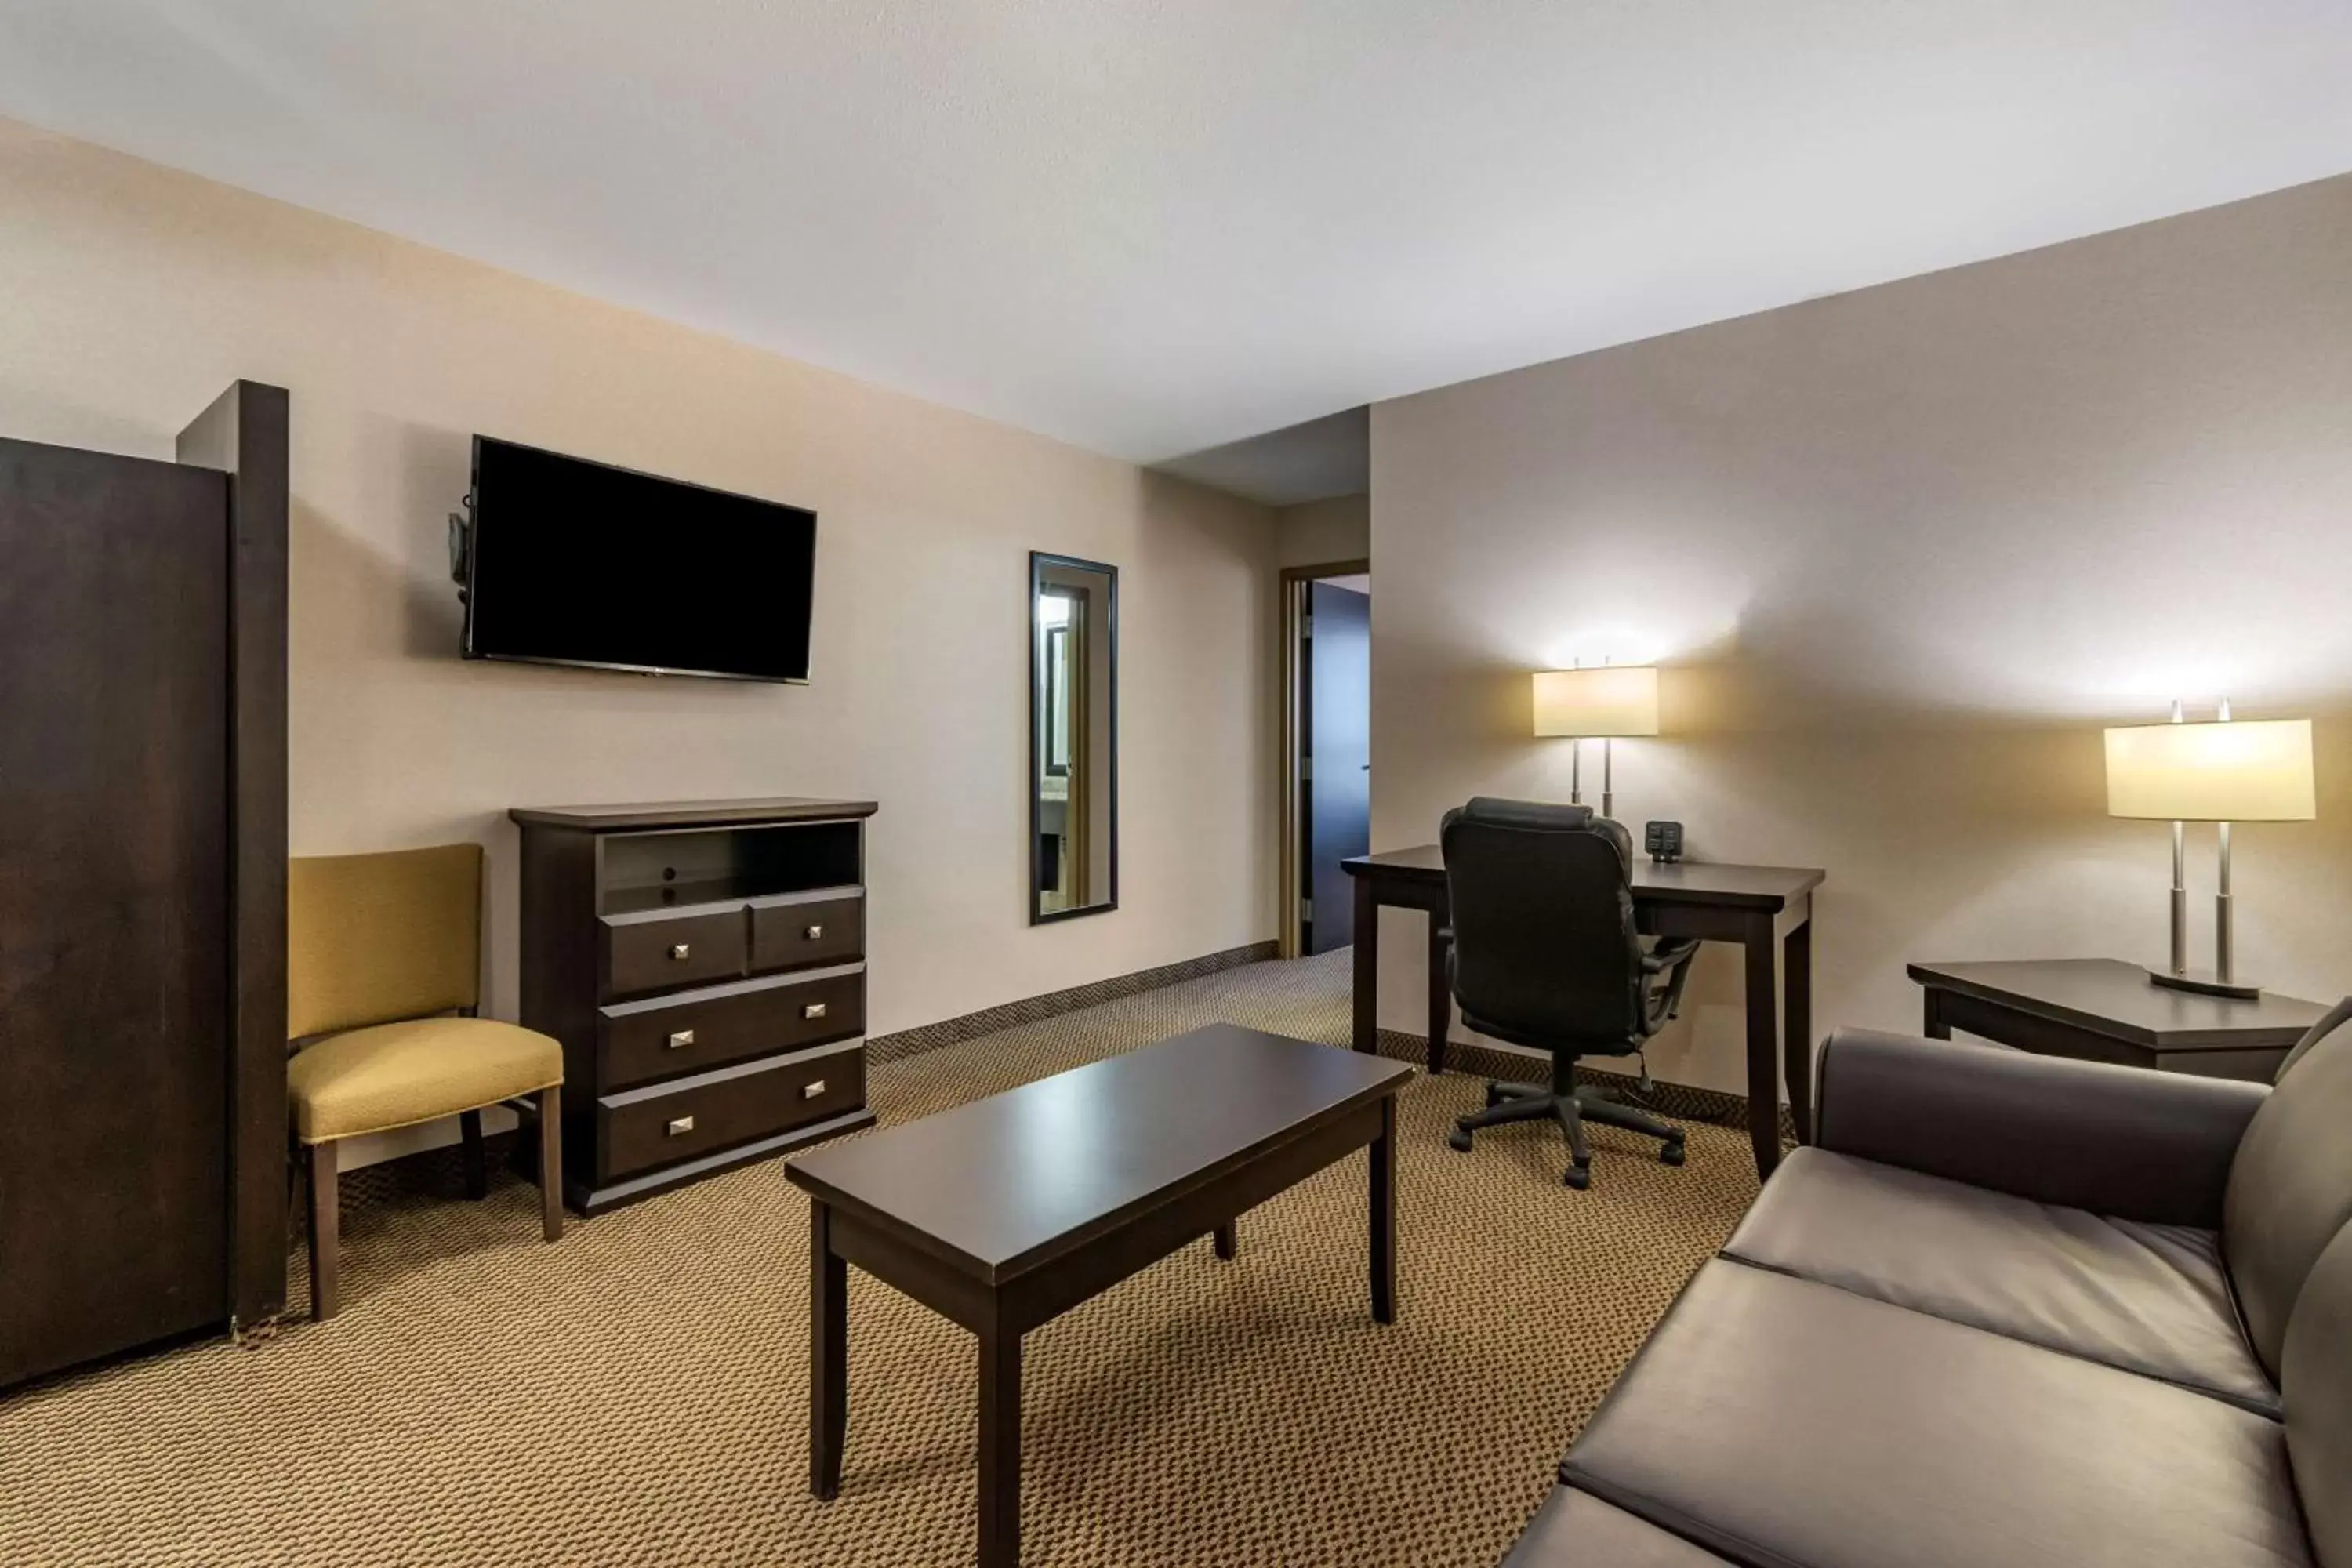 Bedroom, TV/Entertainment Center in Best Western Bonnyville Inn & Suites